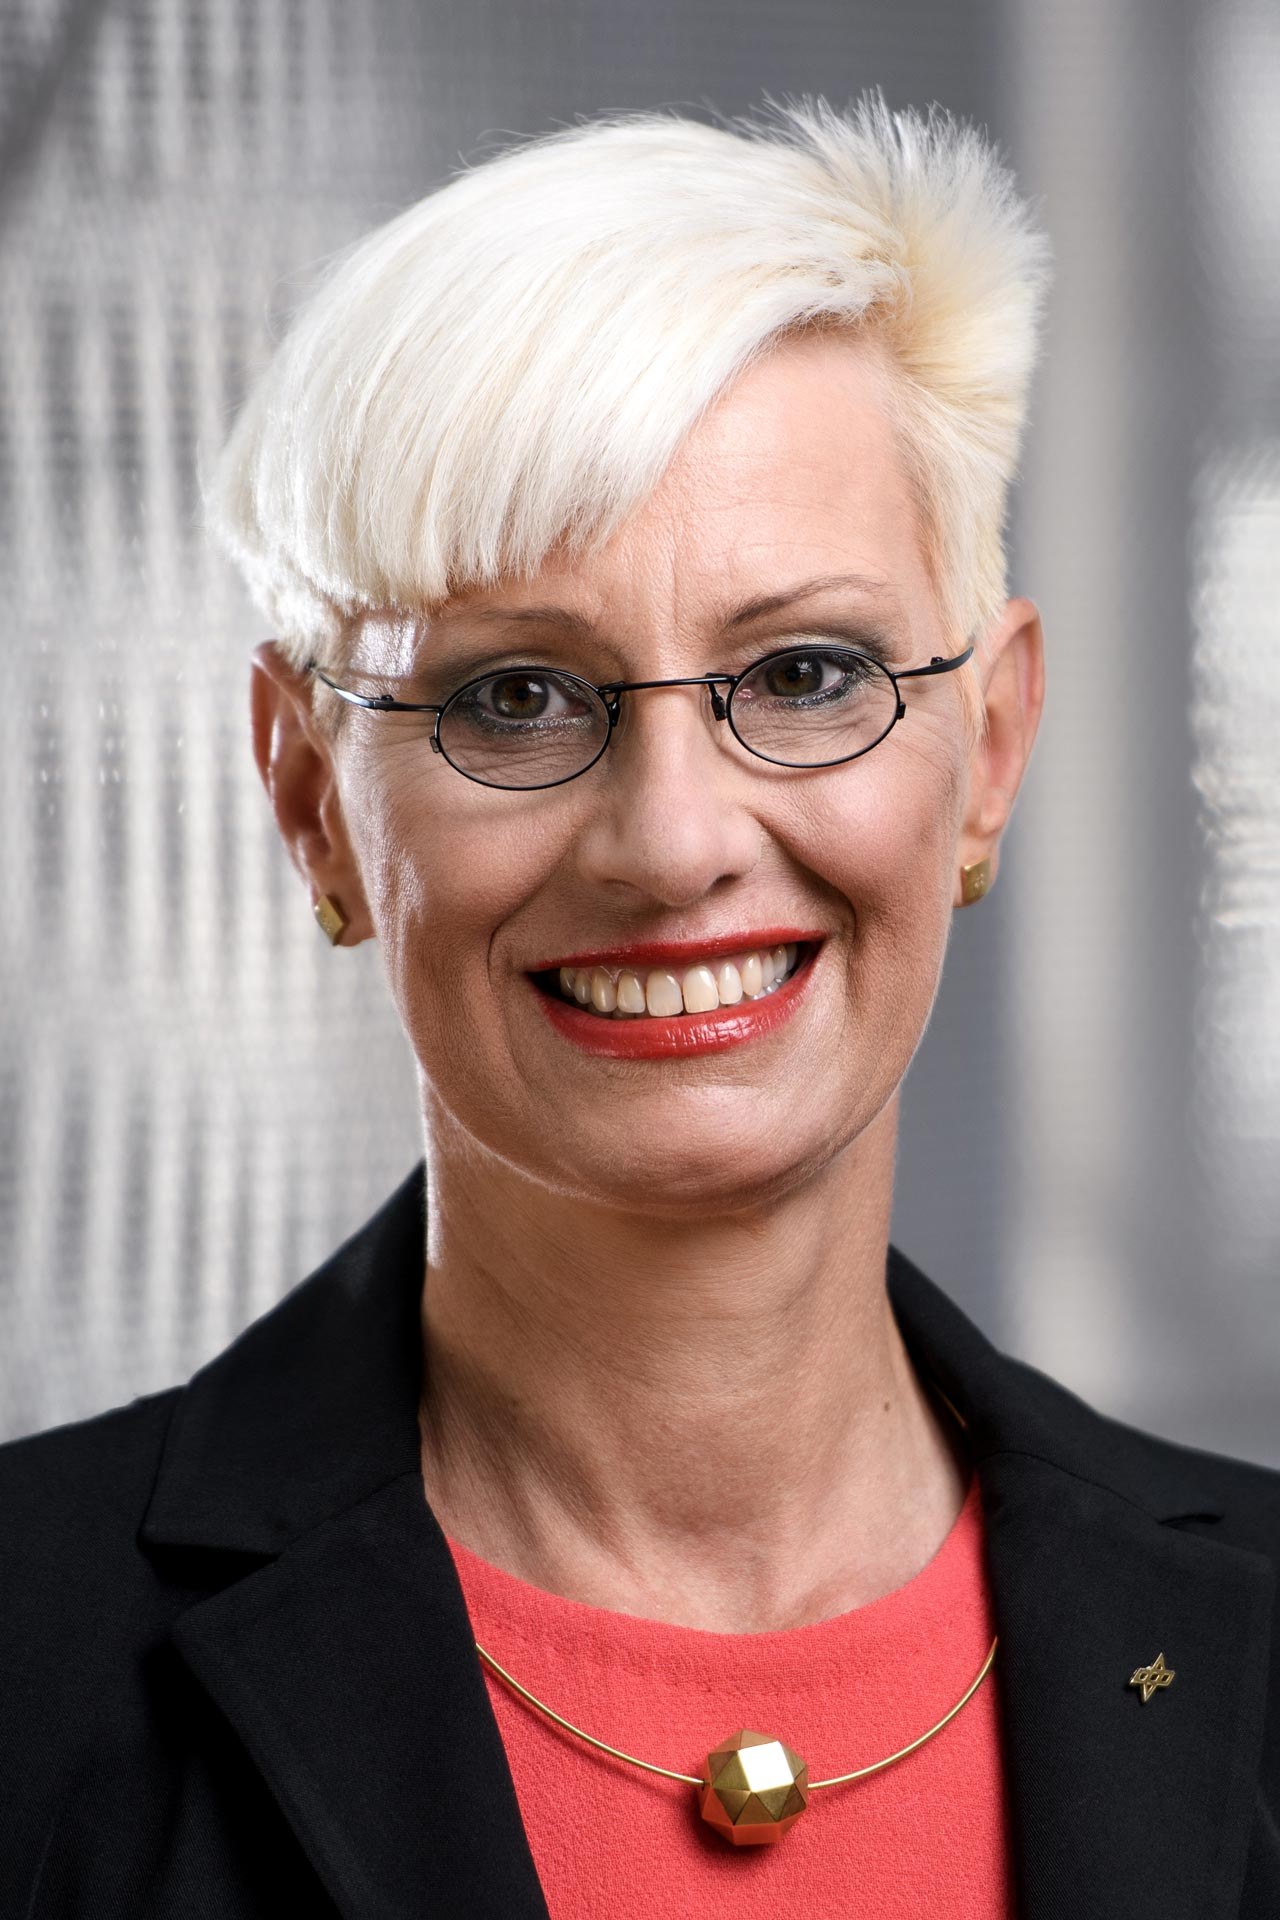 Prof. Dr.-Ing. Anke Kaysser-Pyzalla